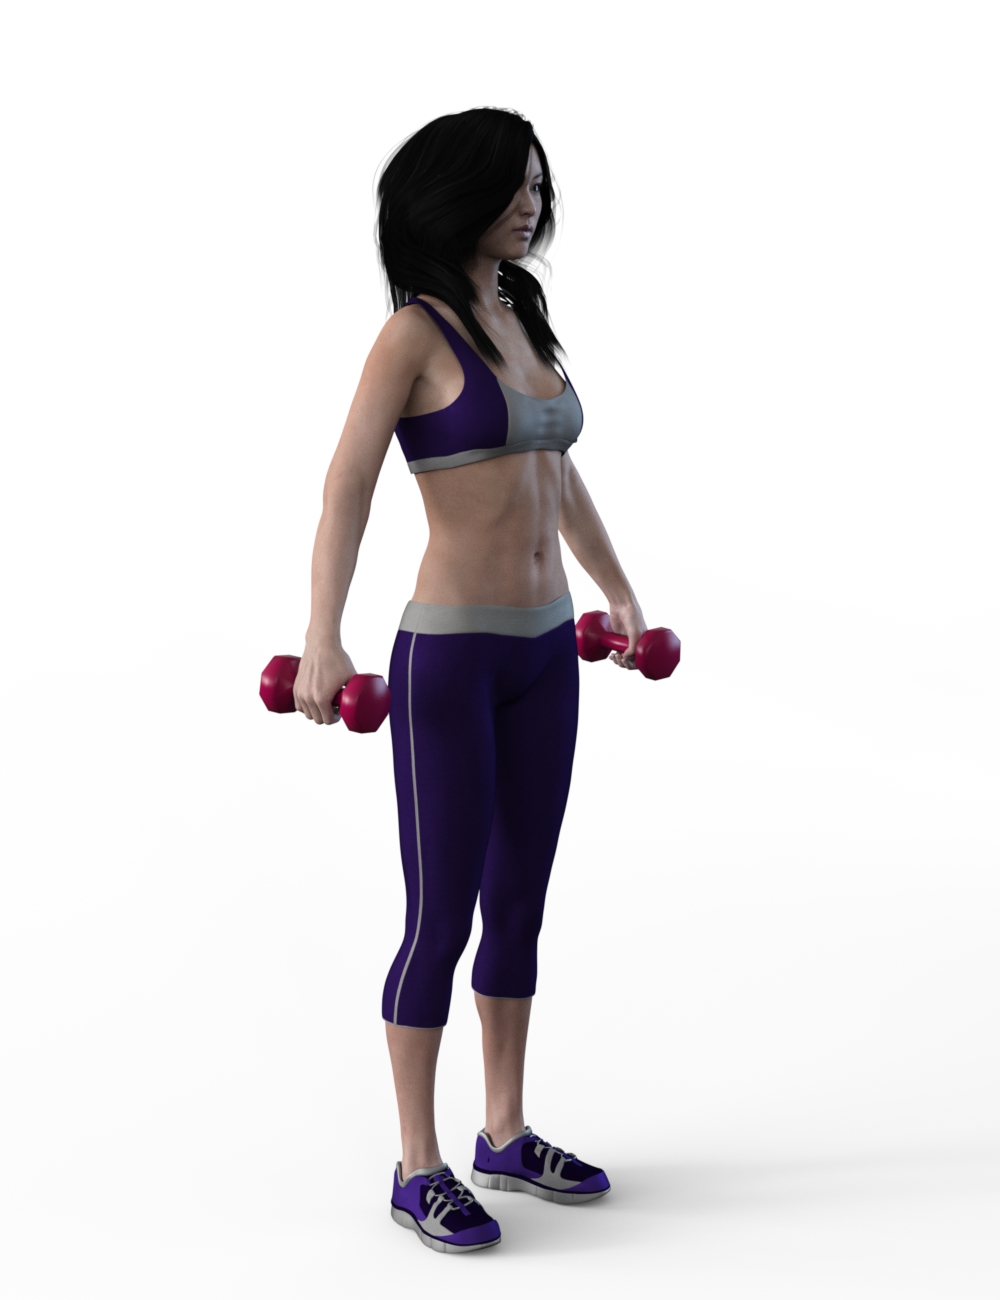 FBX- Mei Lin Cardio Gear by: Paleo, 3D Models by Daz 3D